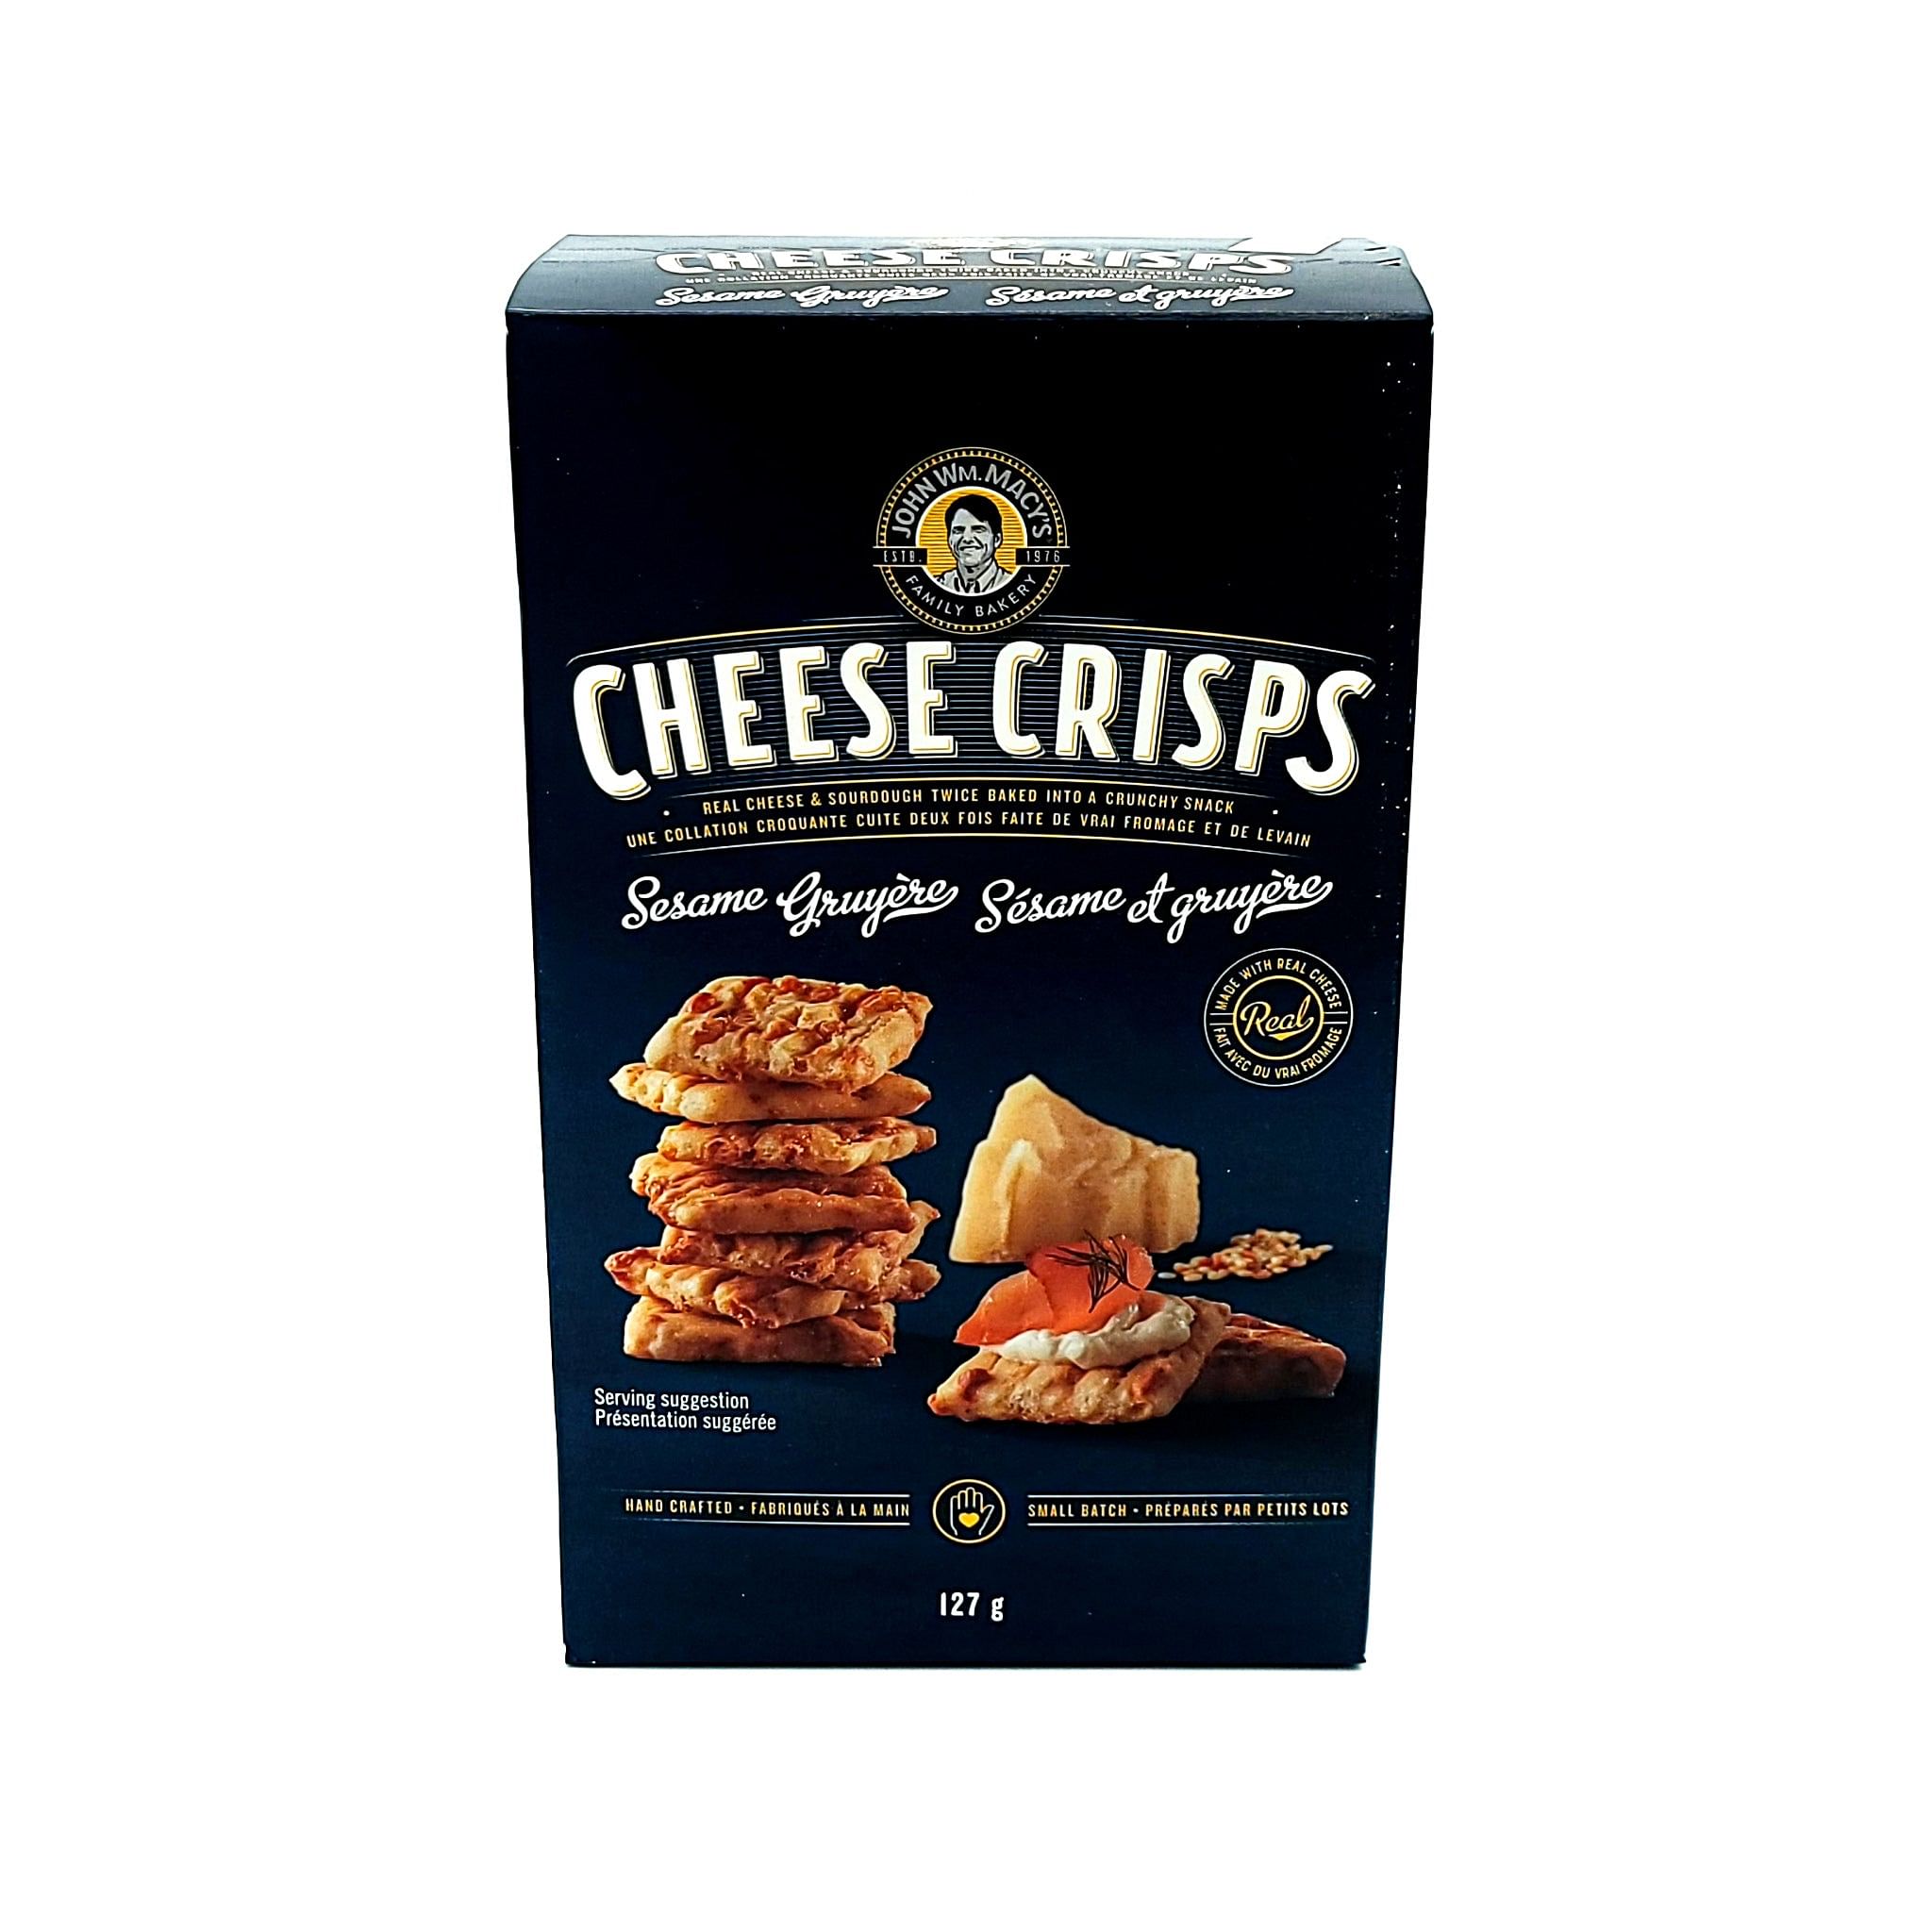 John Wm.Macy's Cheese Crisps - Sesame & Gruyere - 127g